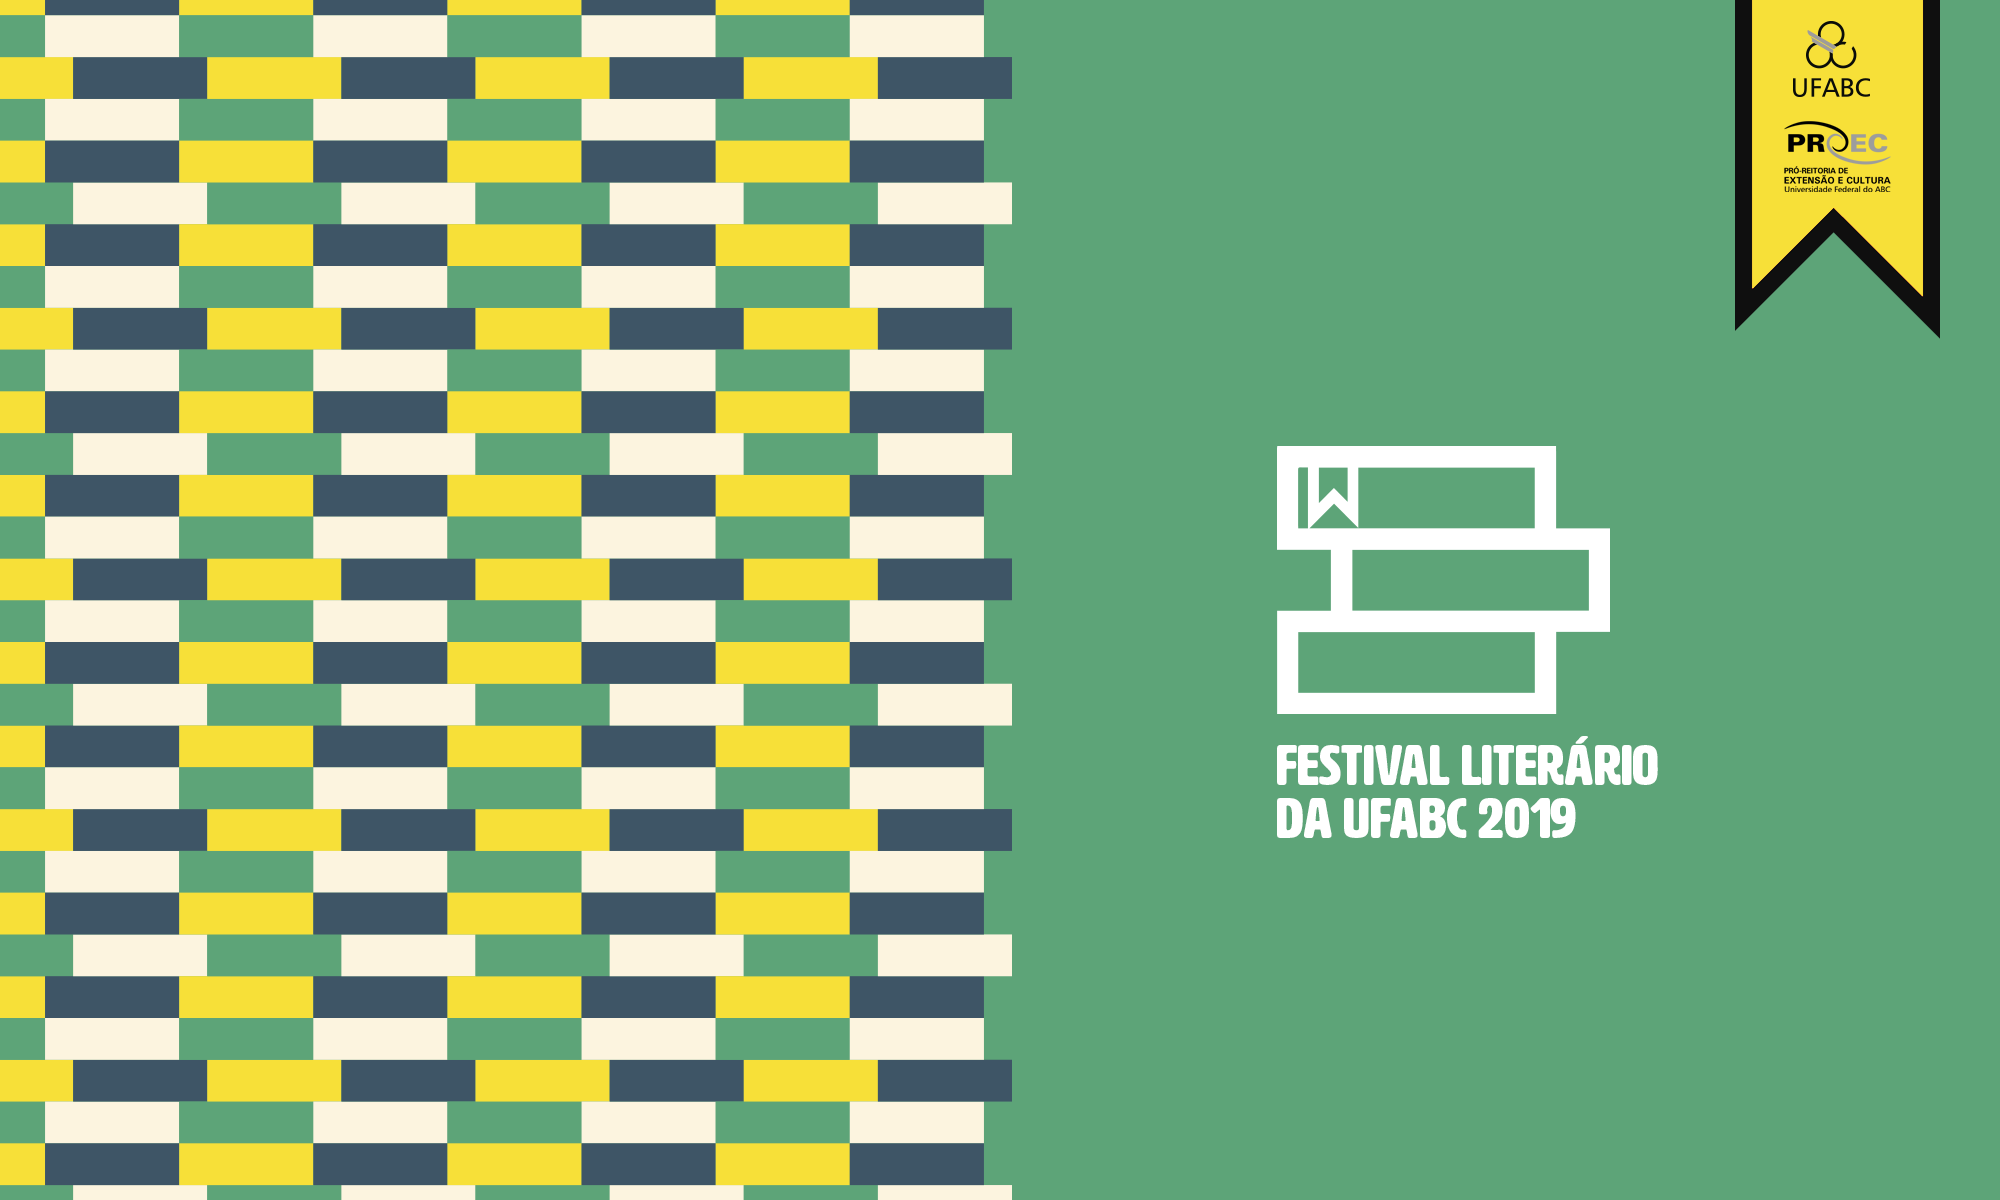 Festival Literário da UFABC 